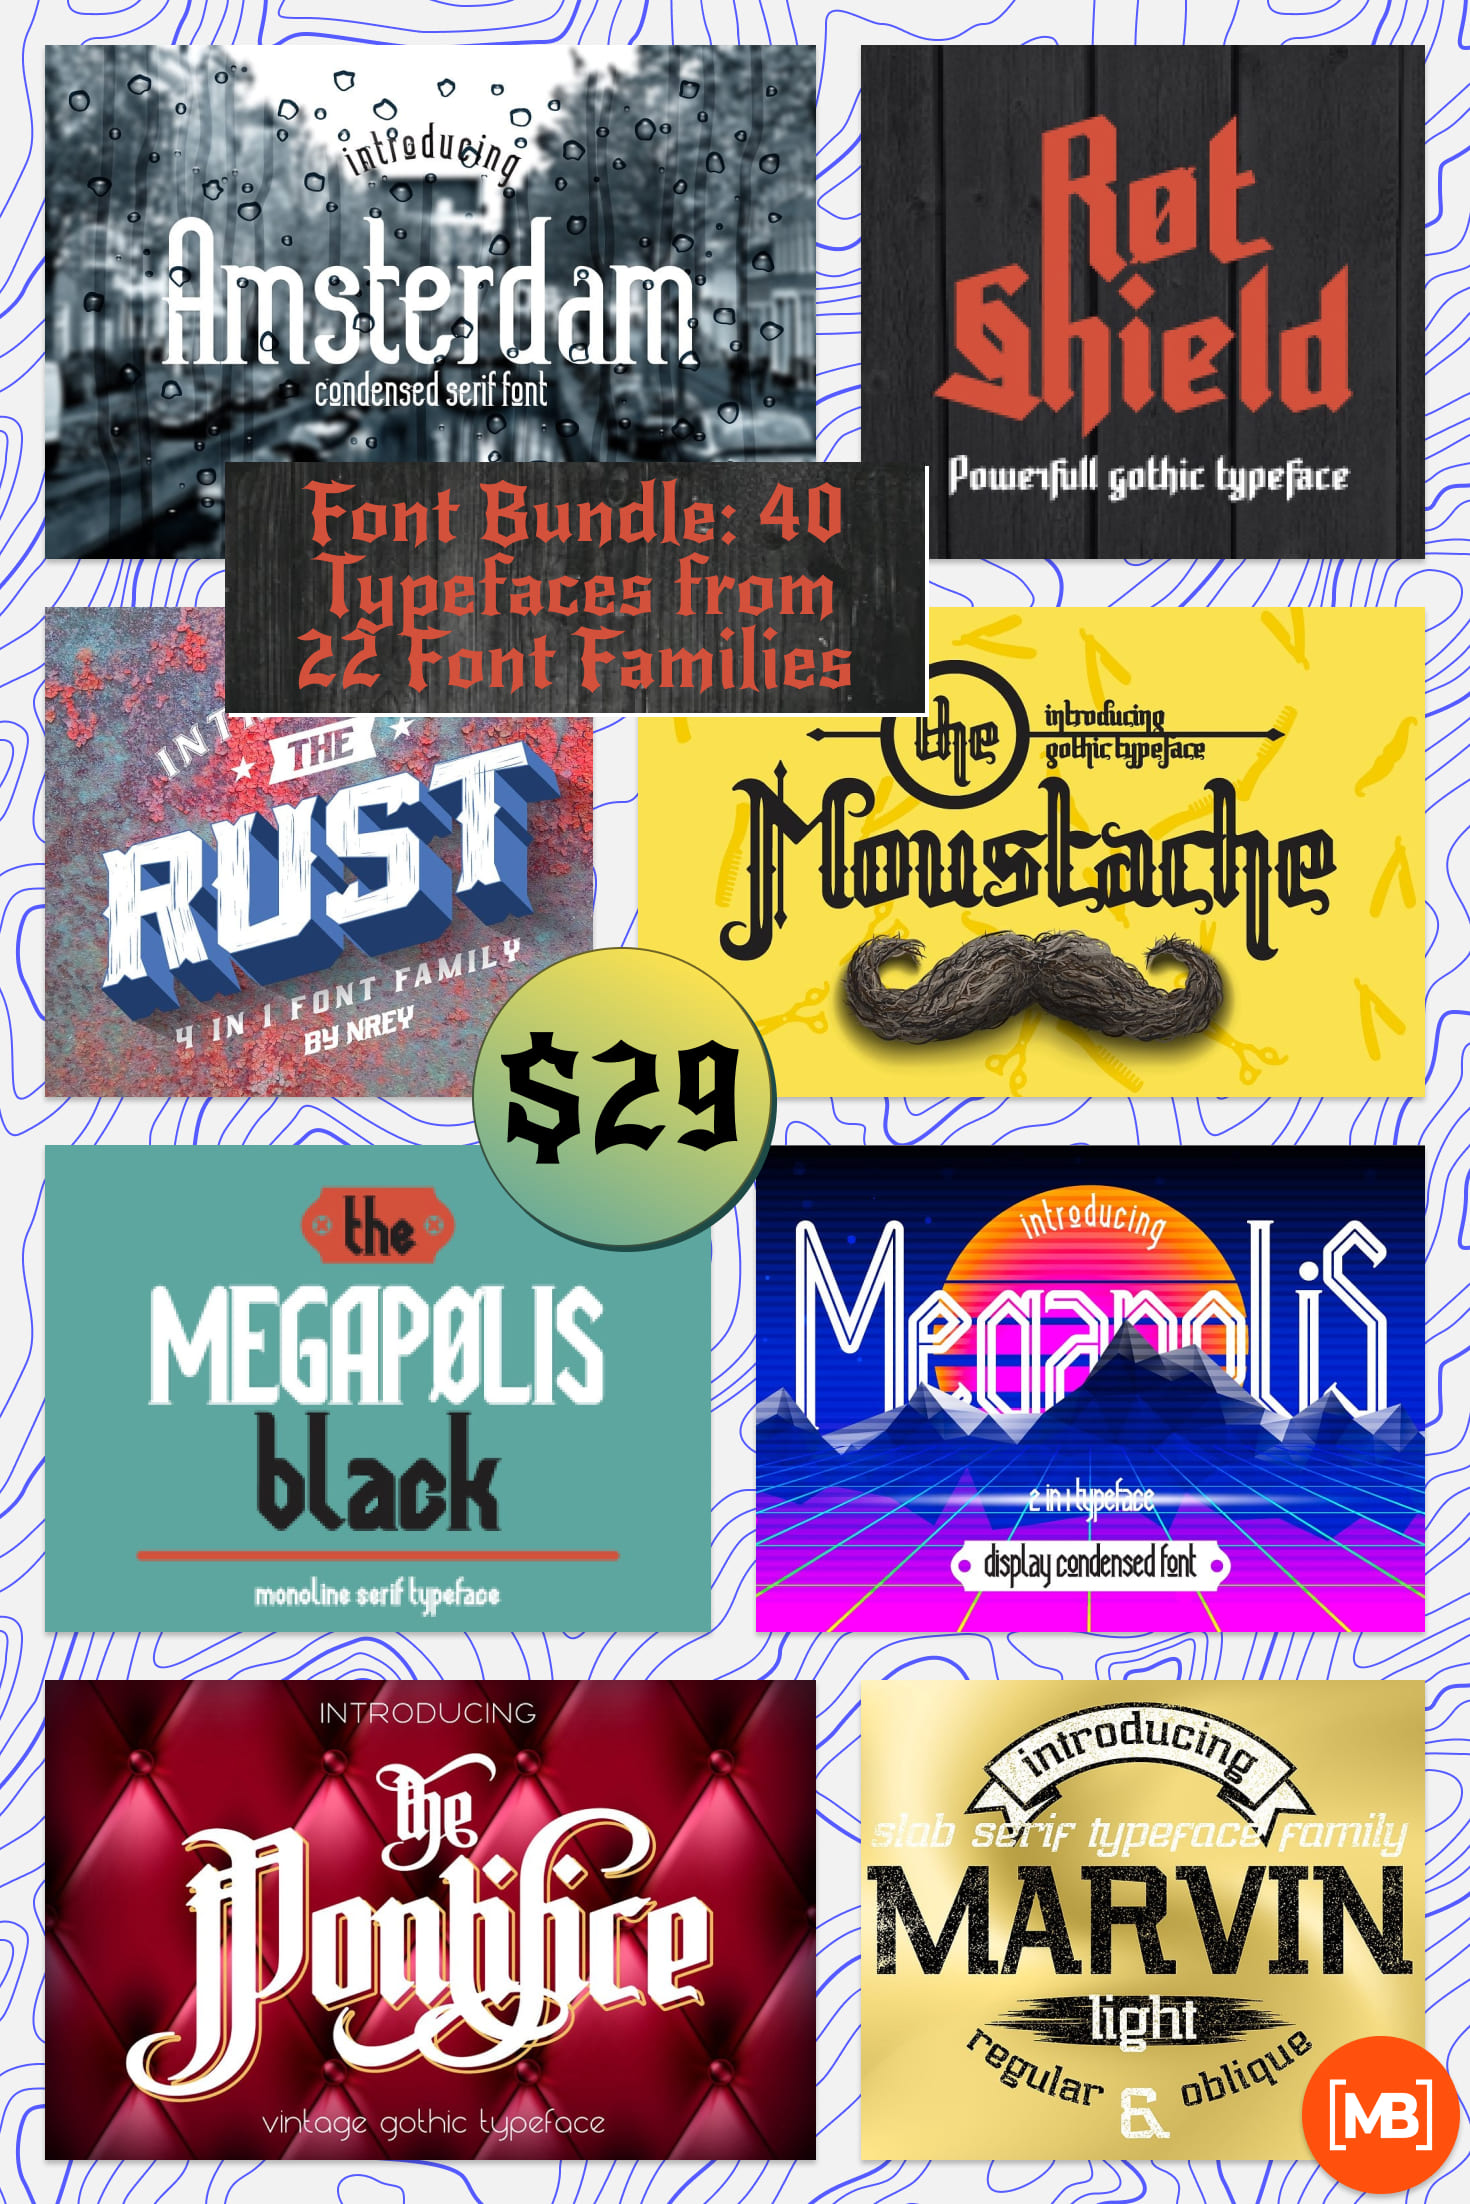 Pinterest Image: Font Bundle: 40 Typefaces from 22 Font Families.